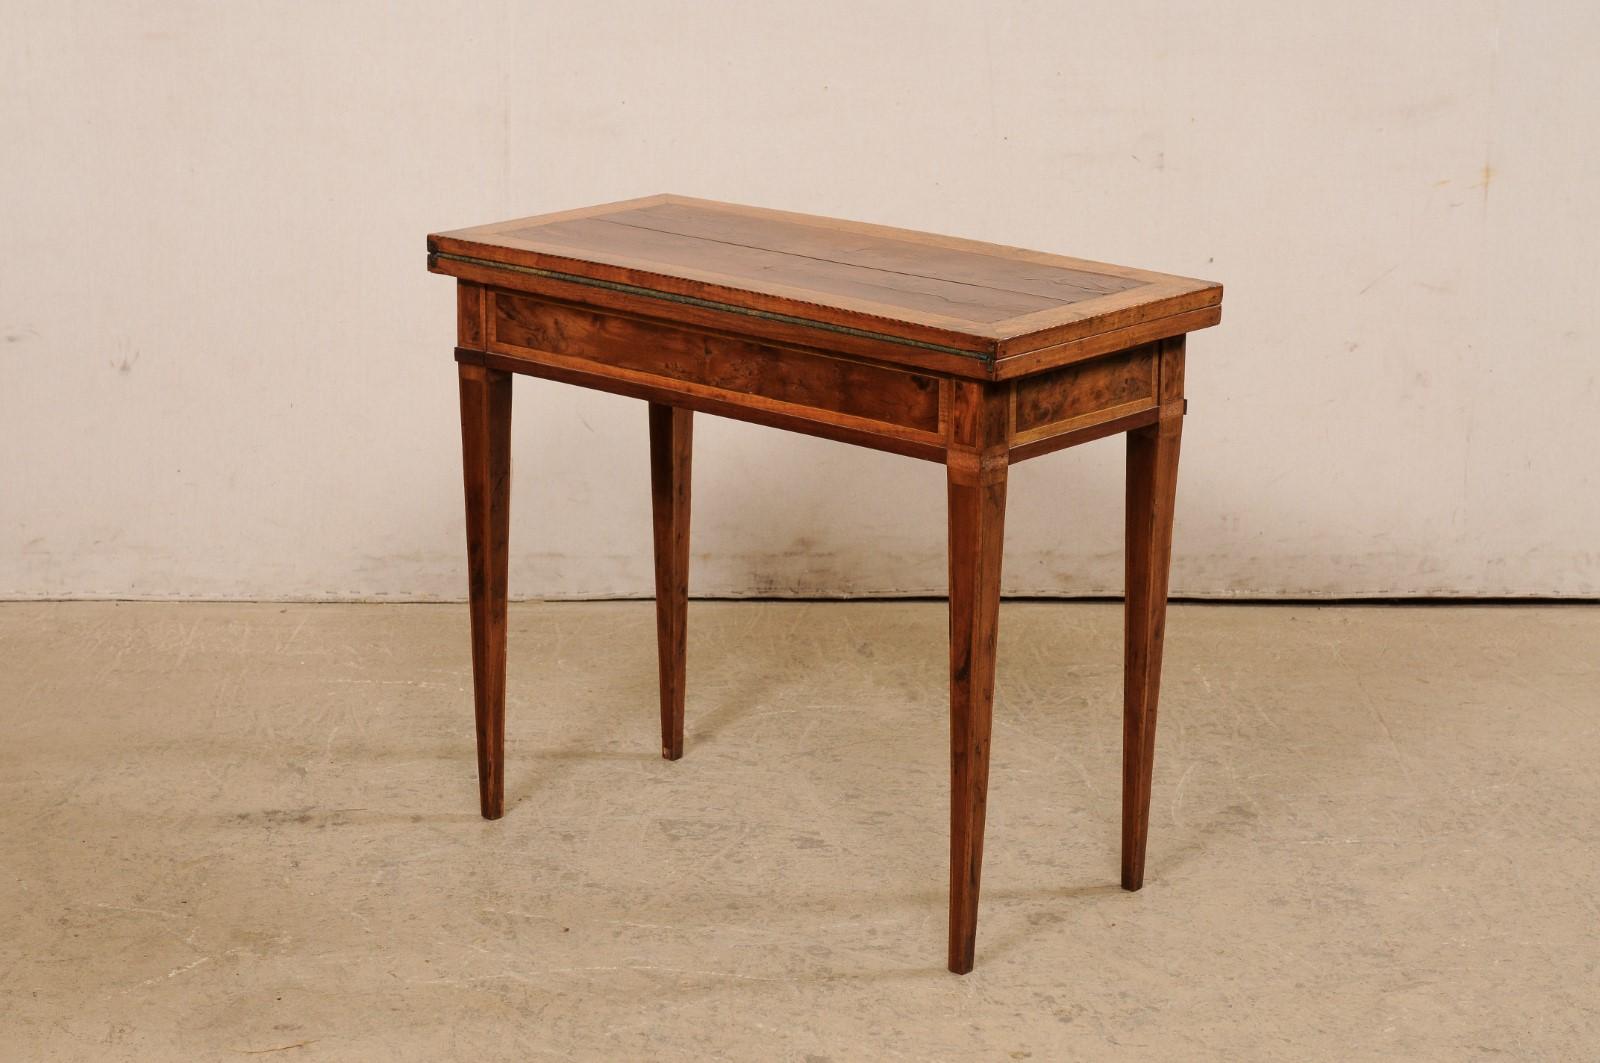 Bois Table à rabat française du 19e siècle, de petite taille, transformée en table à cartes/table de jeu en vente